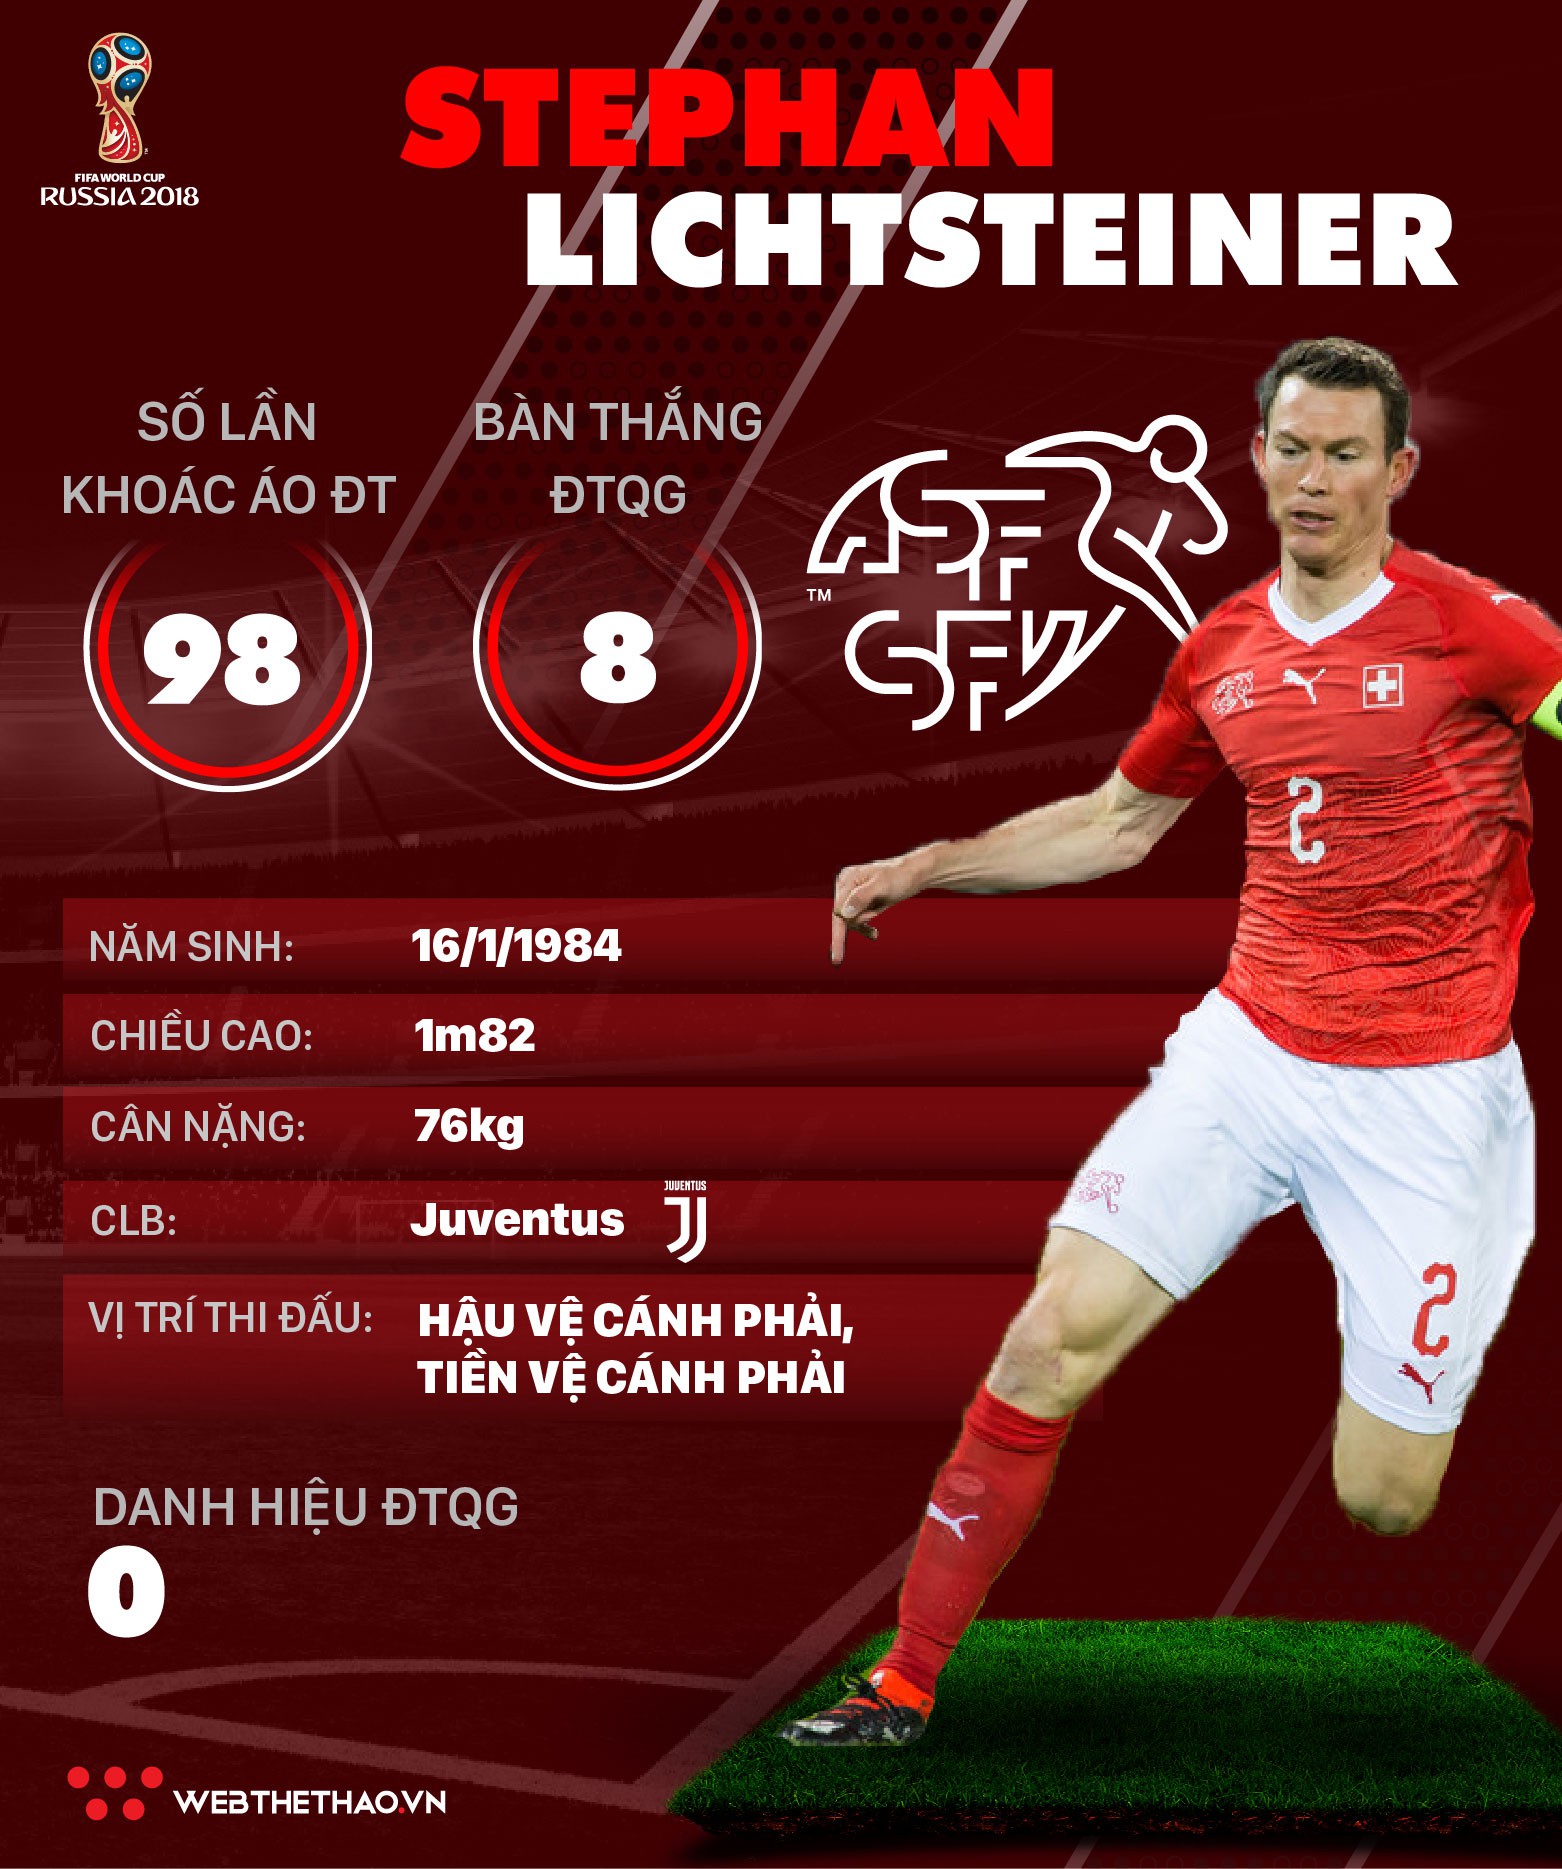 Thông tin cầu thủ Stephan Lichtsteiner của ĐT Thụy Sĩ dự World Cup 2018 - Ảnh 1.